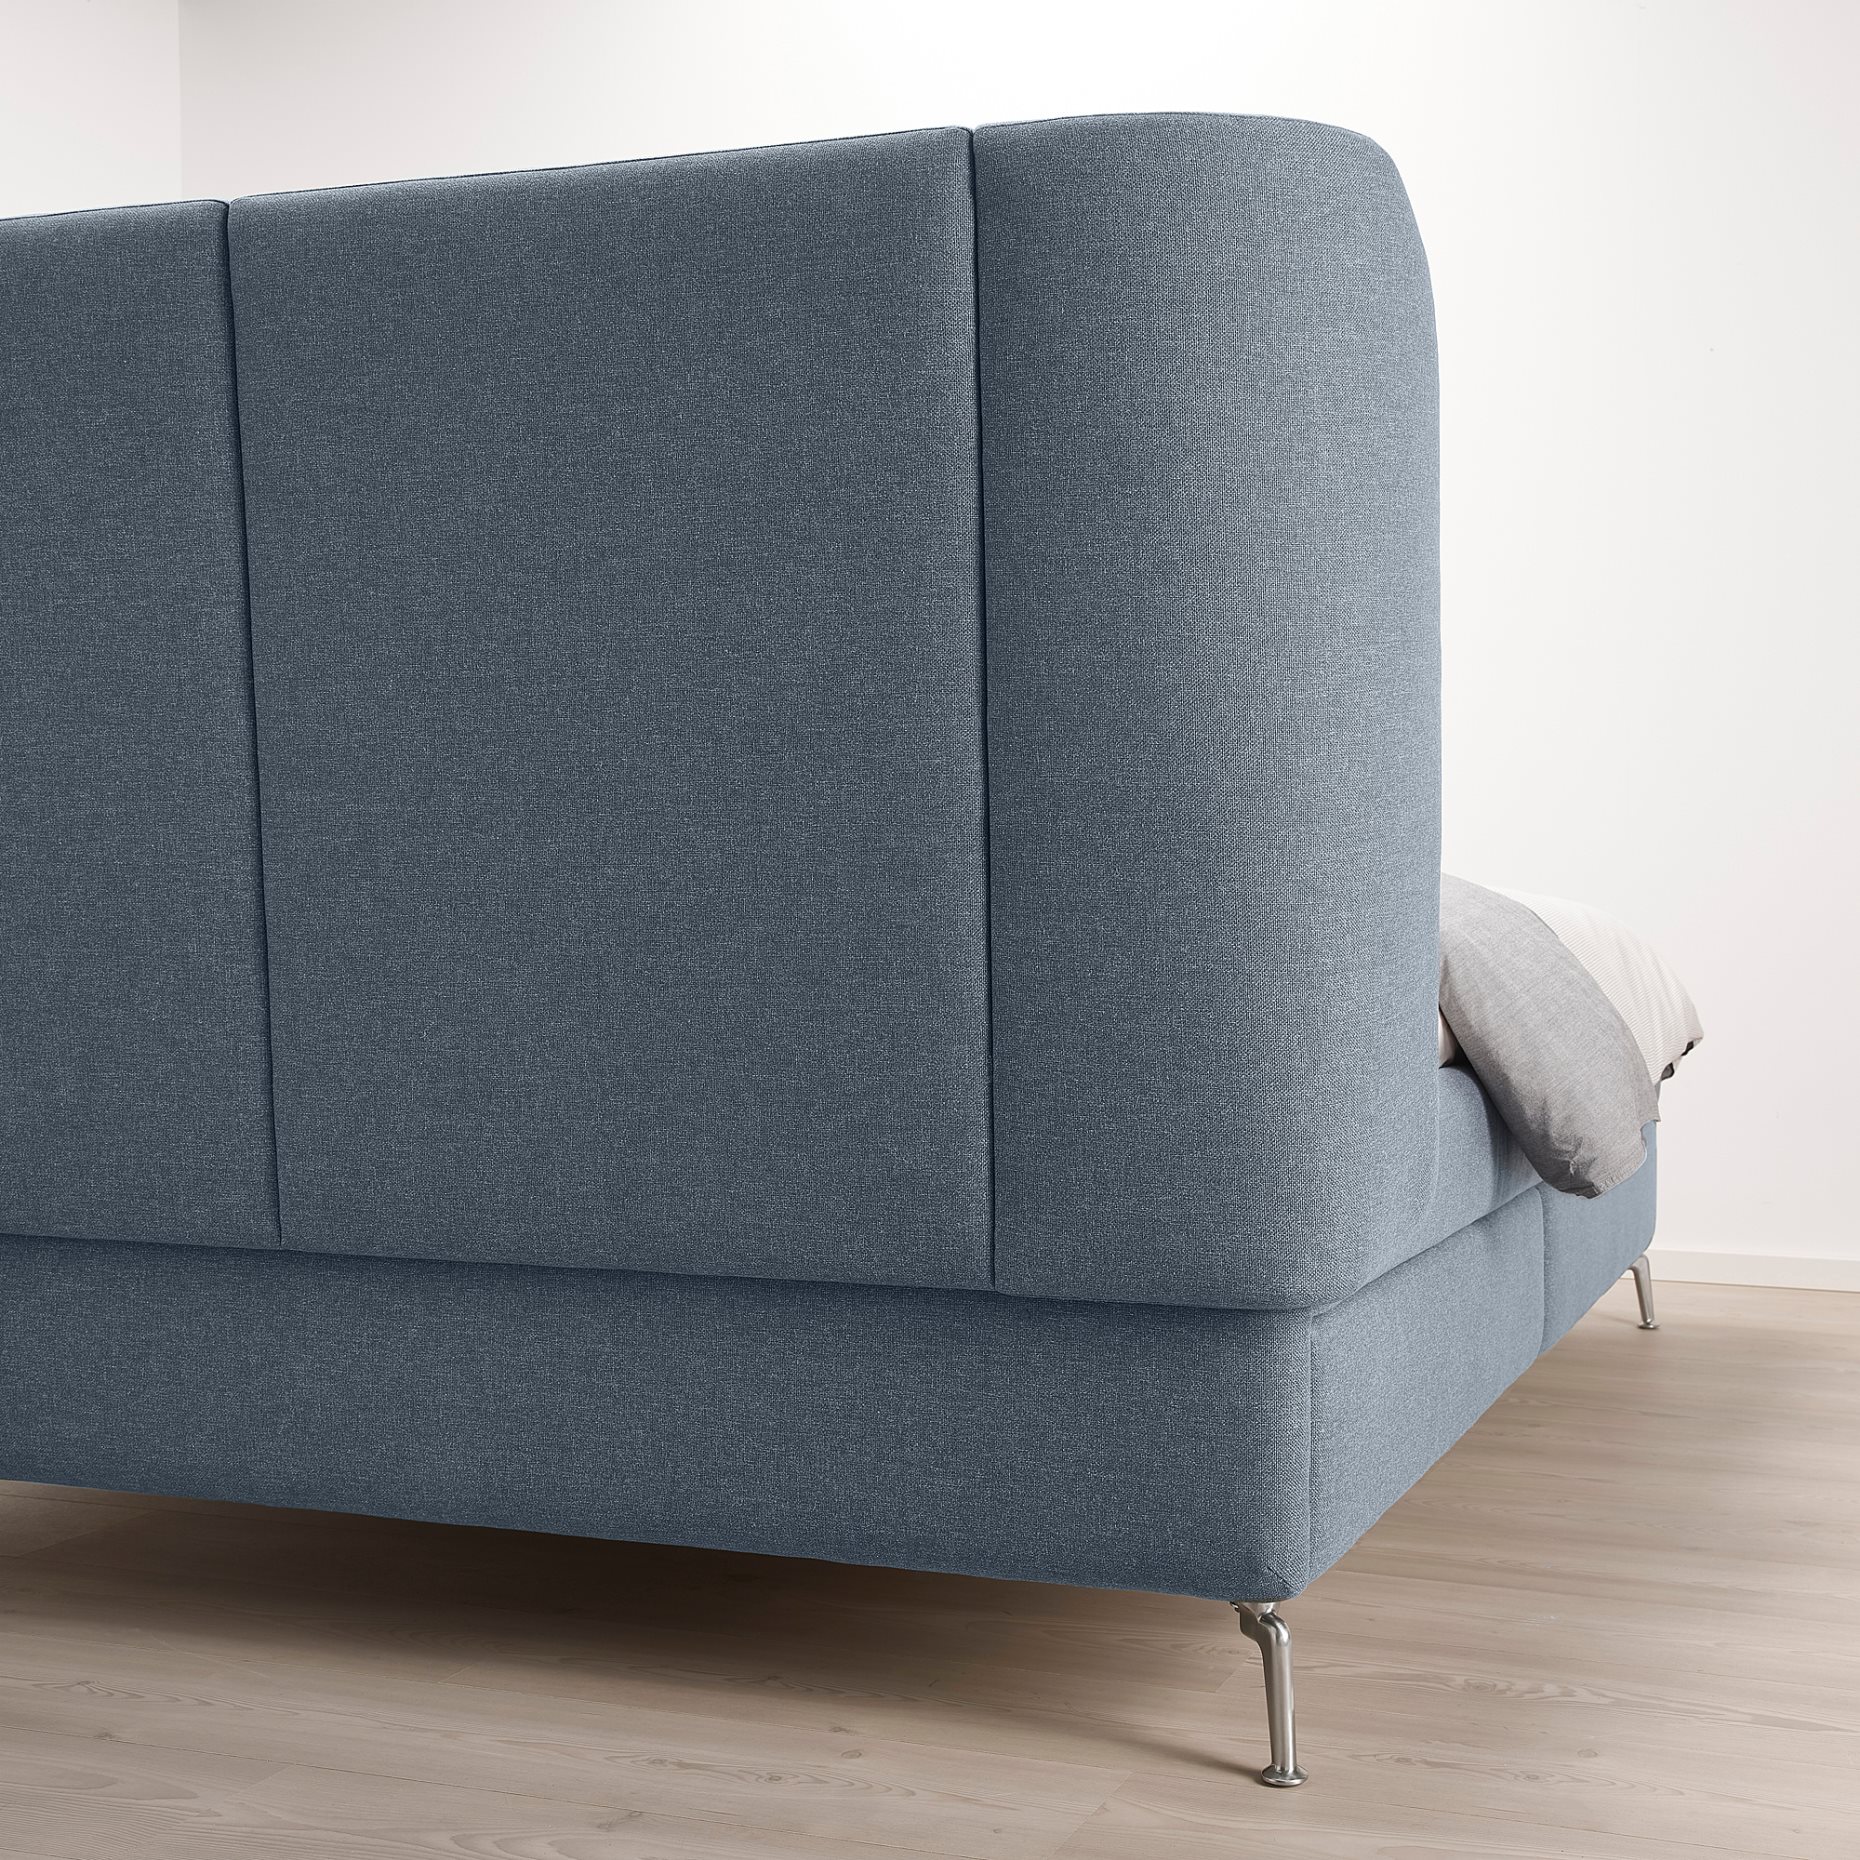 TUFJORD, upholstered storage bed, 140x200 cm, 205.209.38